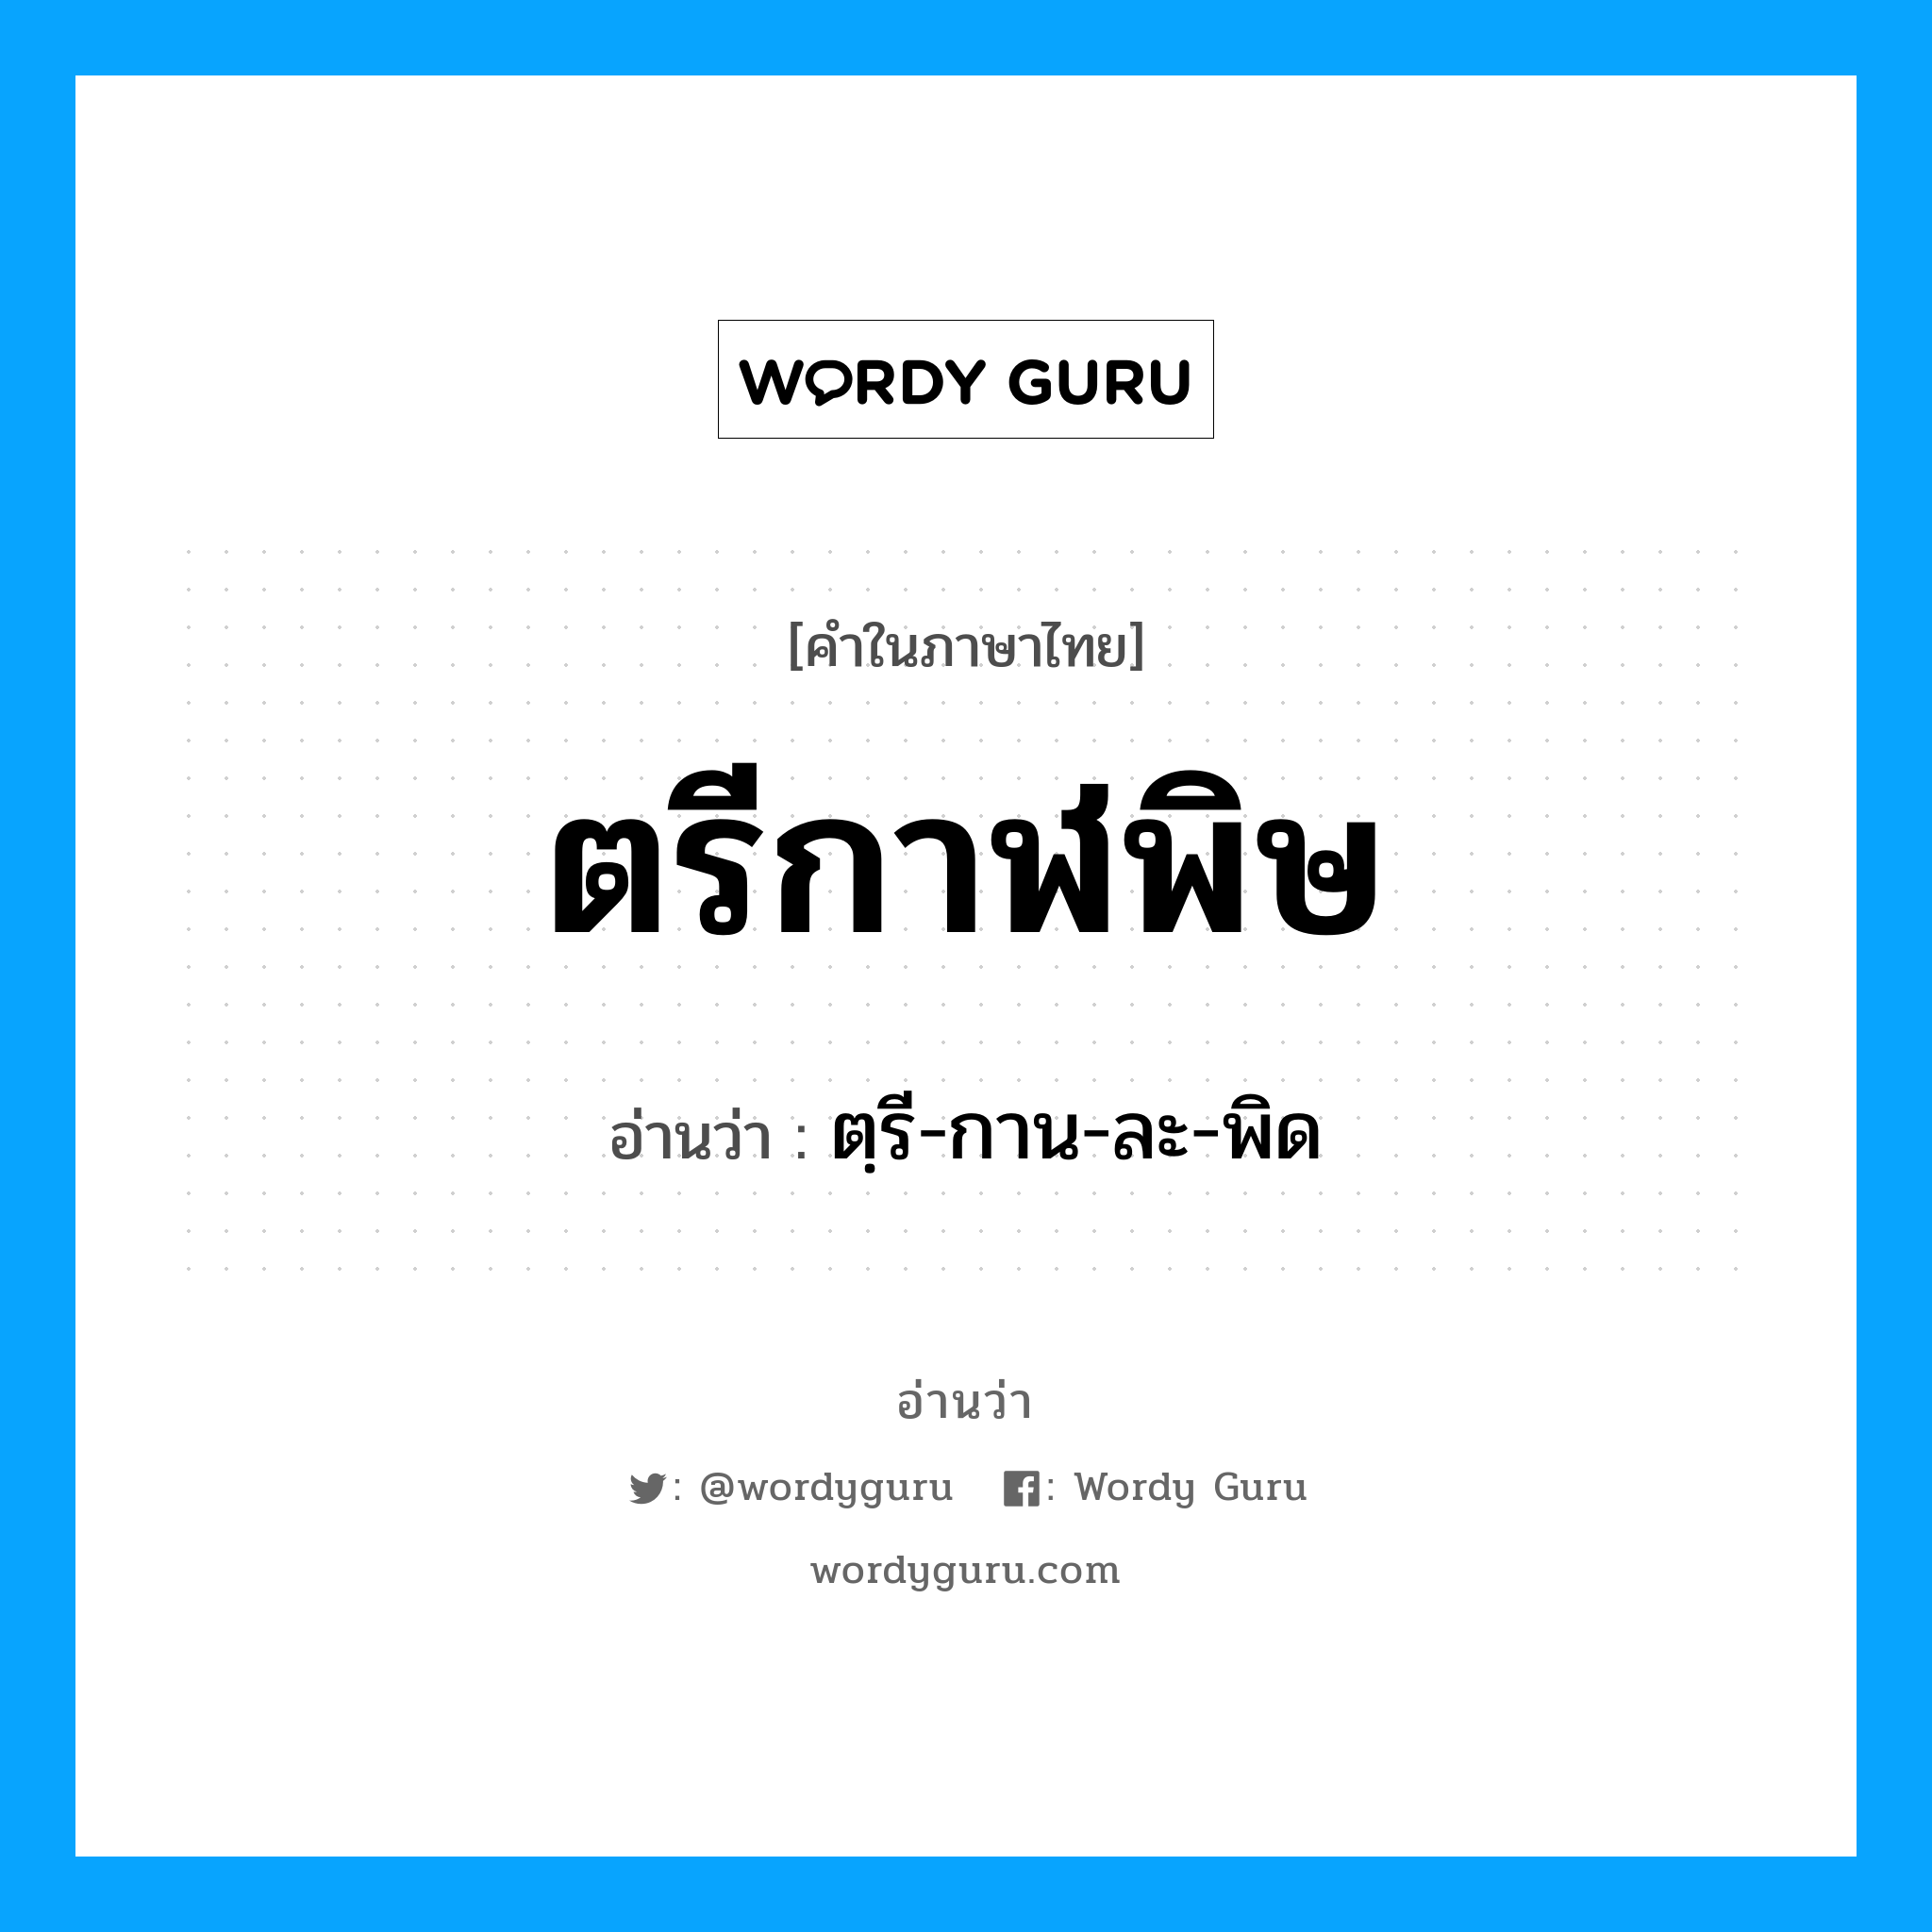 ตฺรี-กาน-ละ-พิด เป็นคำอ่านของคำไหน?, คำในภาษาไทย ตฺรี-กาน-ละ-พิด อ่านว่า ตรีกาฬพิษ